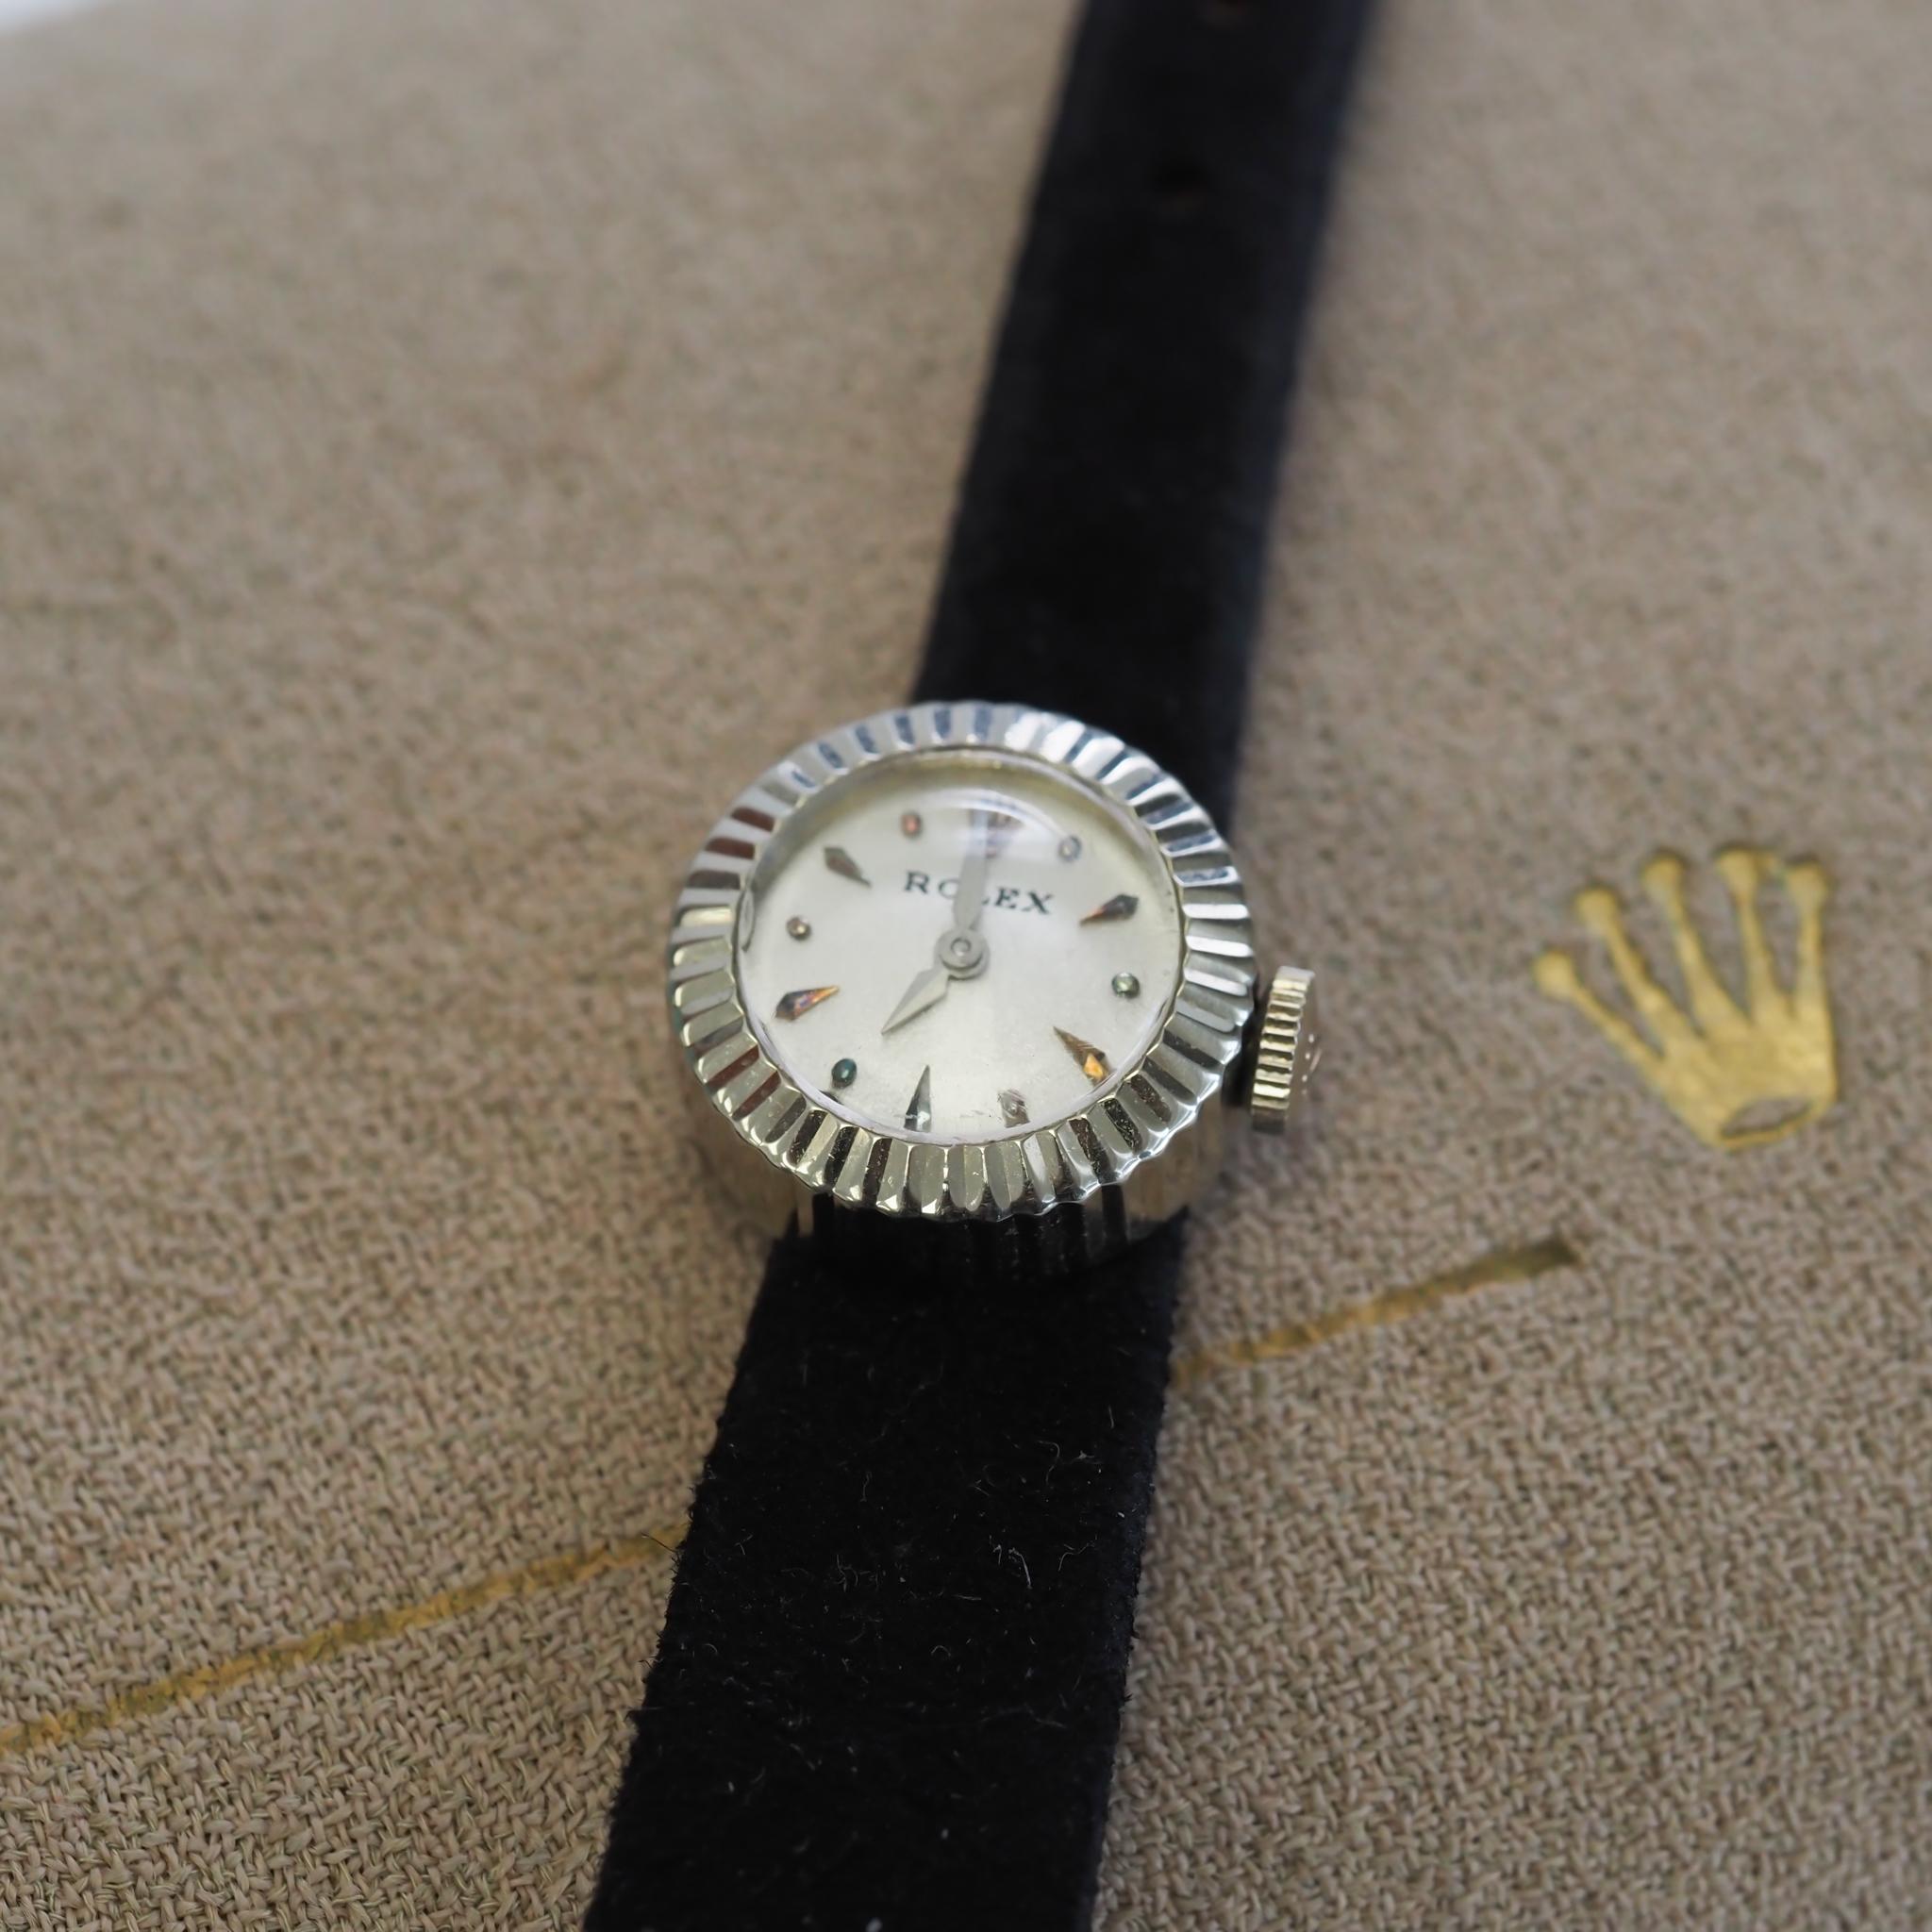 Taille du boîtier : 17,5 mm
Type de métal : Or blanc 18K [poinçonné et testé].
*Livré avec son étui d'origine et 2 bracelets Rolex supplémentaires.
Horlogerie : Rolex
Condition : Excellent, en cours d'exécution.